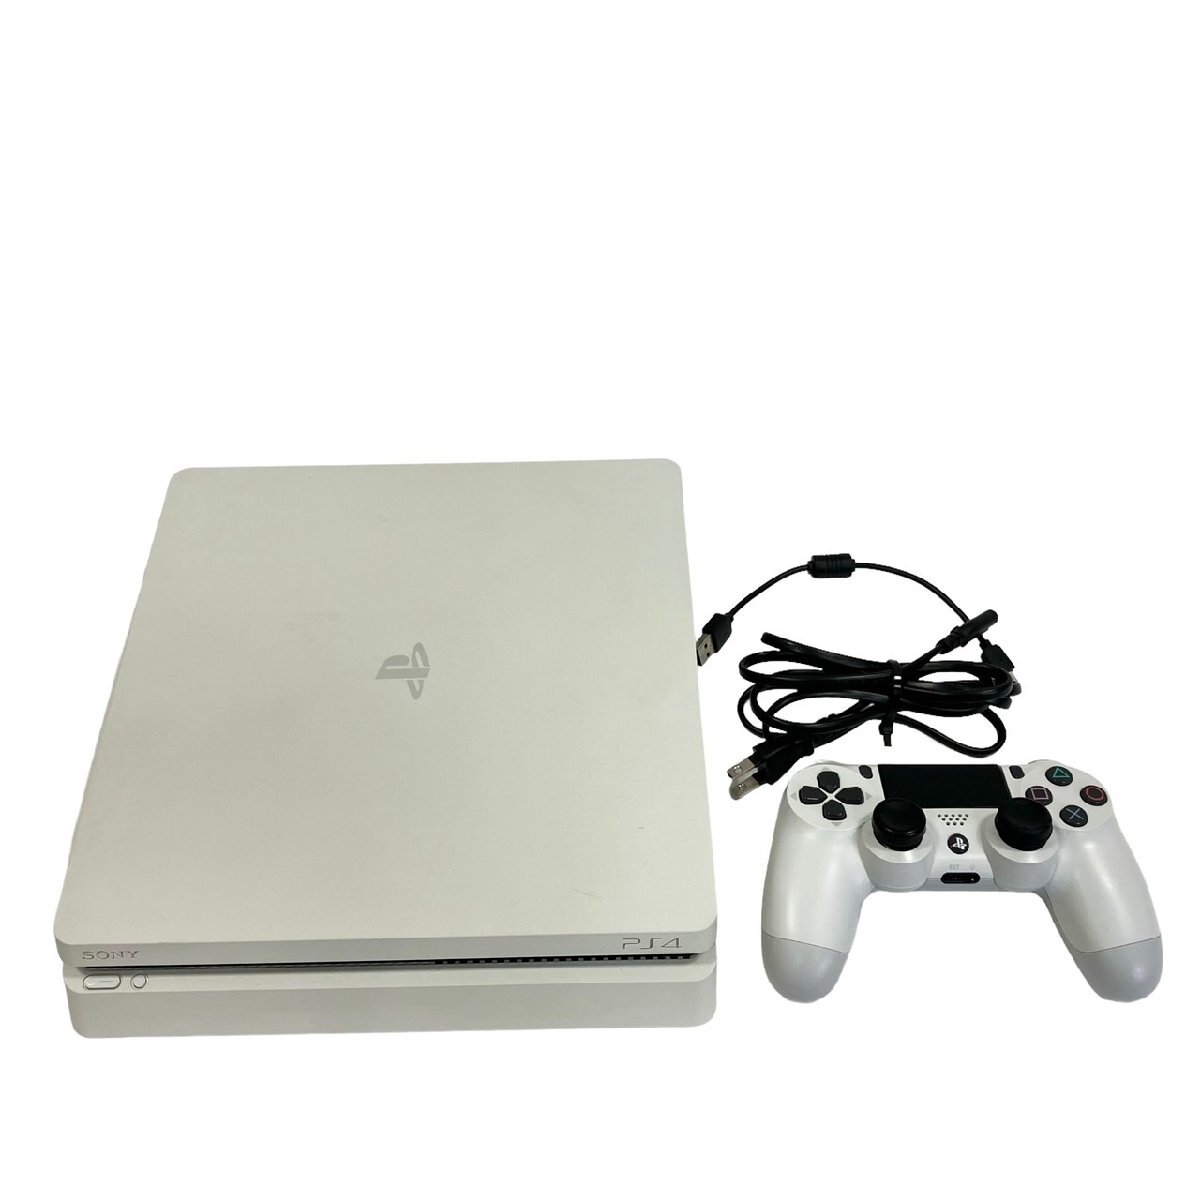 KS USED SONY PlayStation4 ソニー プレイステーション4 PS4 CUH-2200A ホワイト 初期化 動作確認済 500GB ゲーム プレステ4_SONY PlayStation4 CUH-2200A